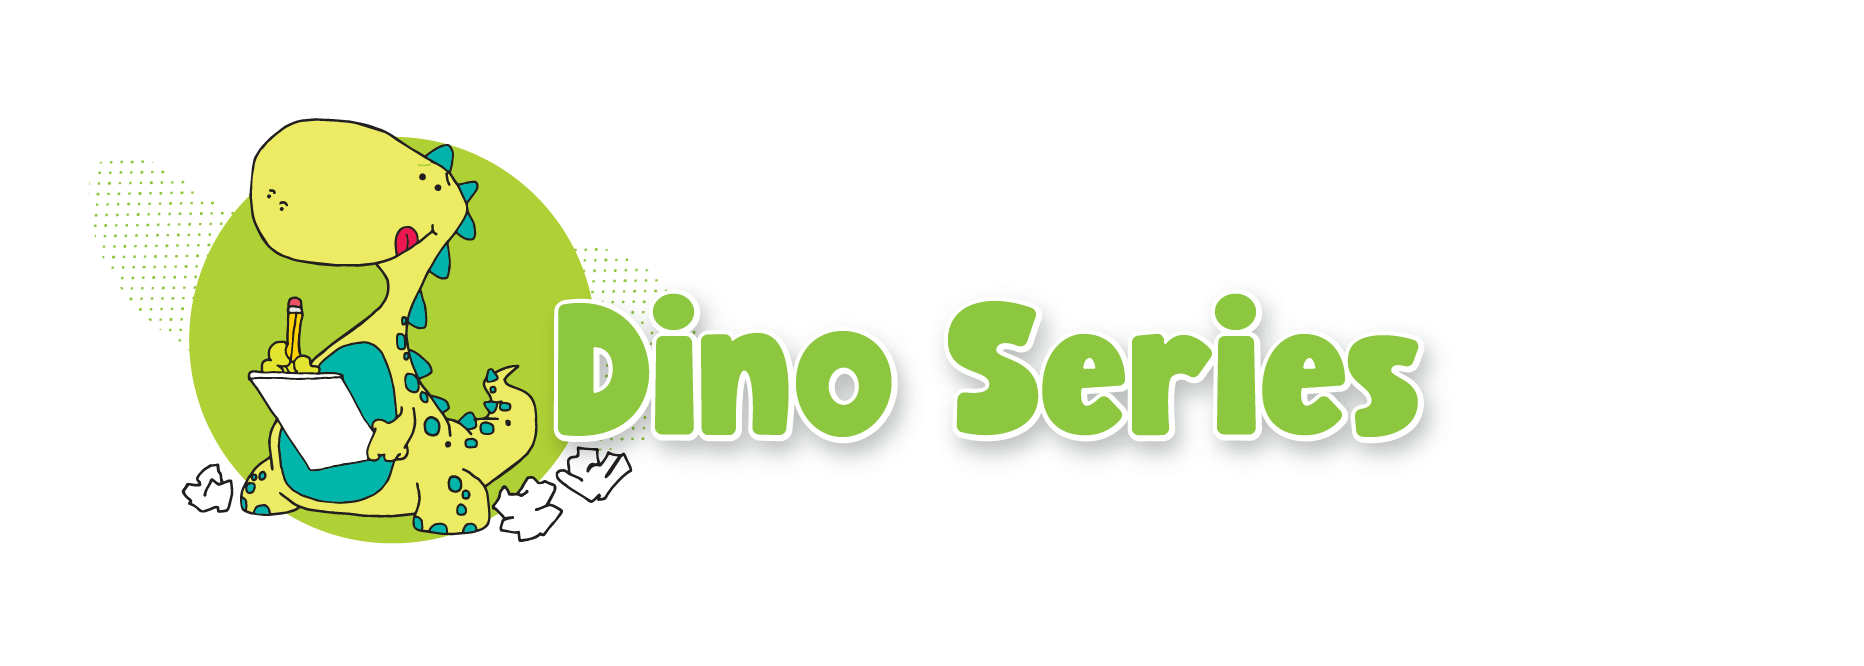 Dino Series